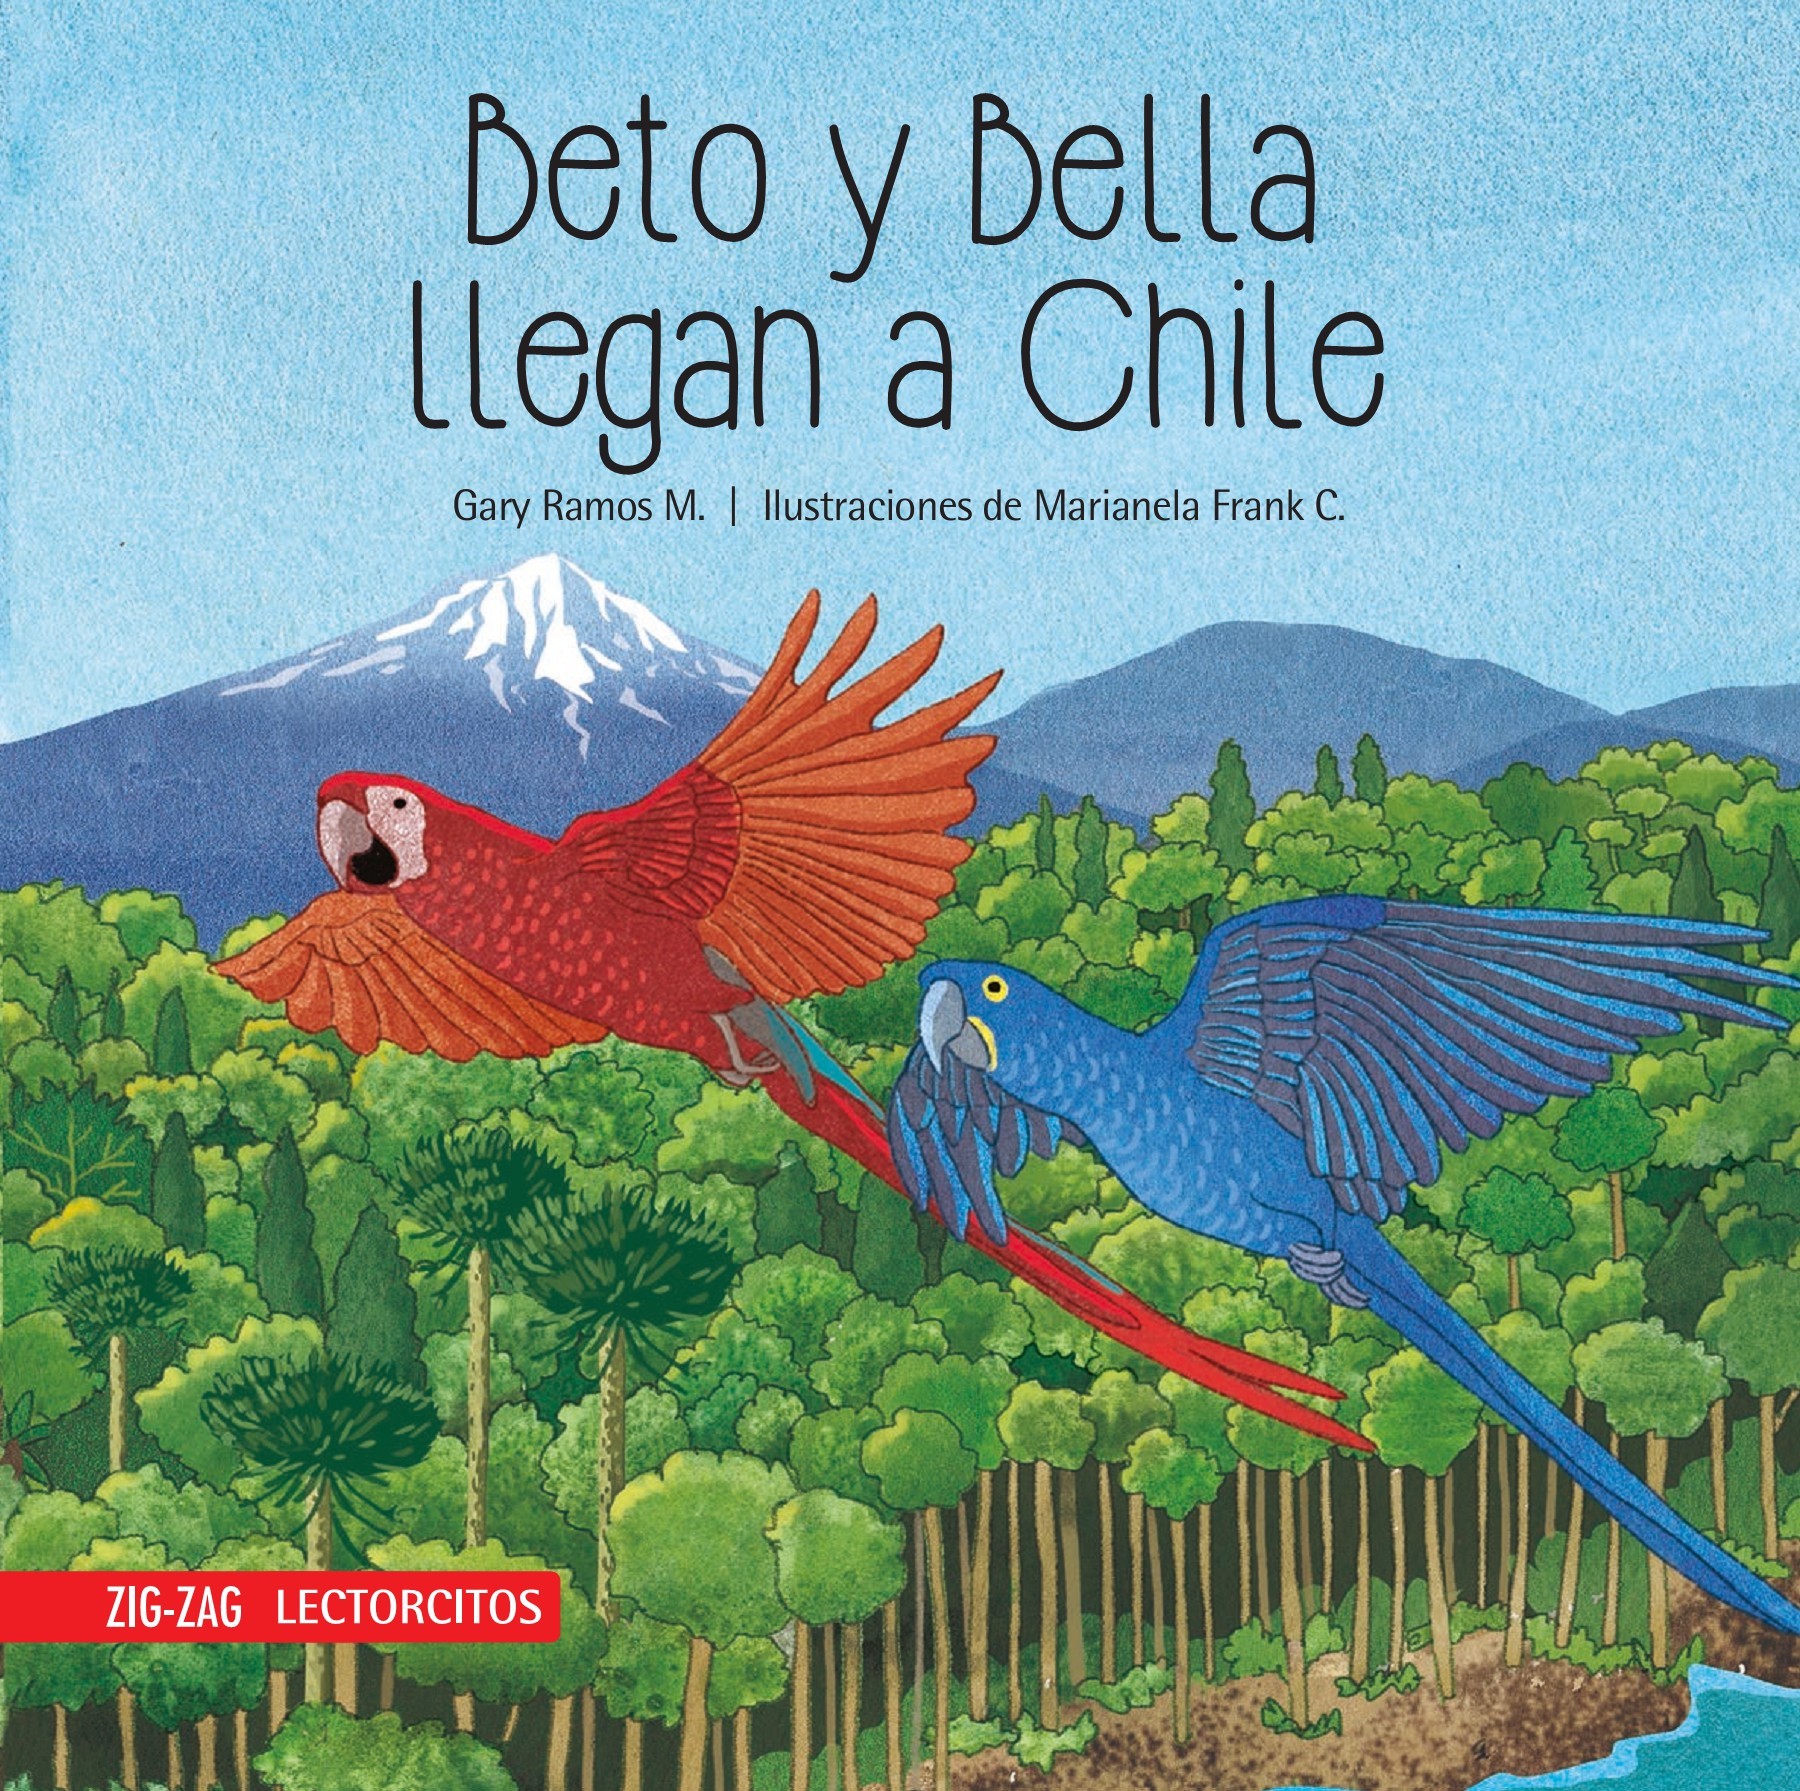 beto-y-bella-llegan-a-chile-1.jpg